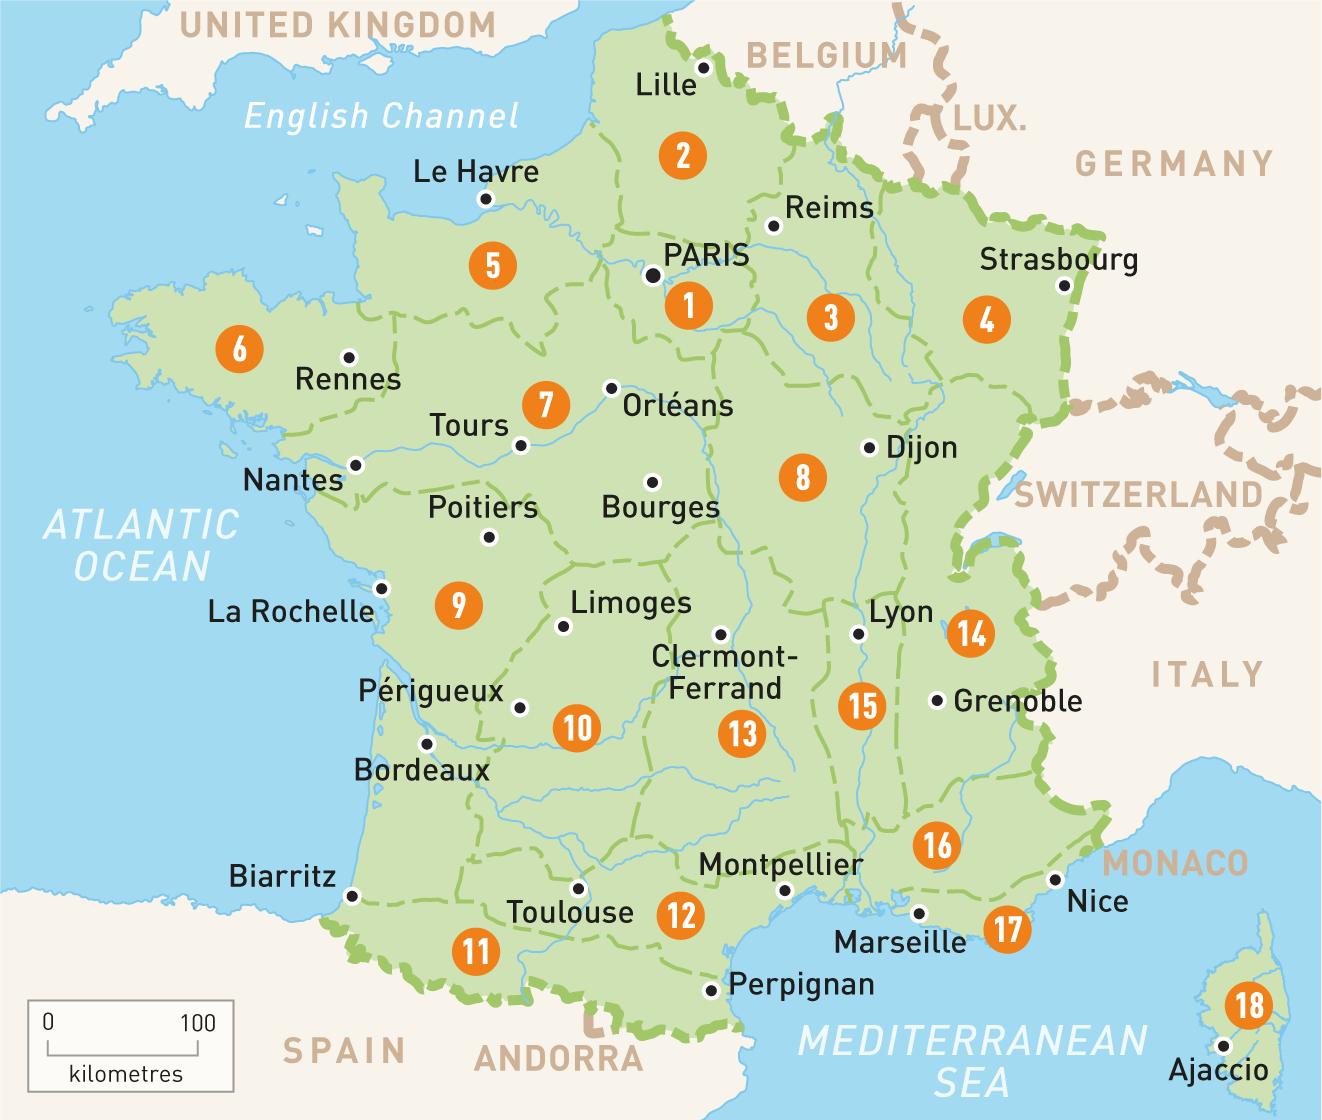 О городе марсель во франции: на карте франции на русском языке, достопримечательности